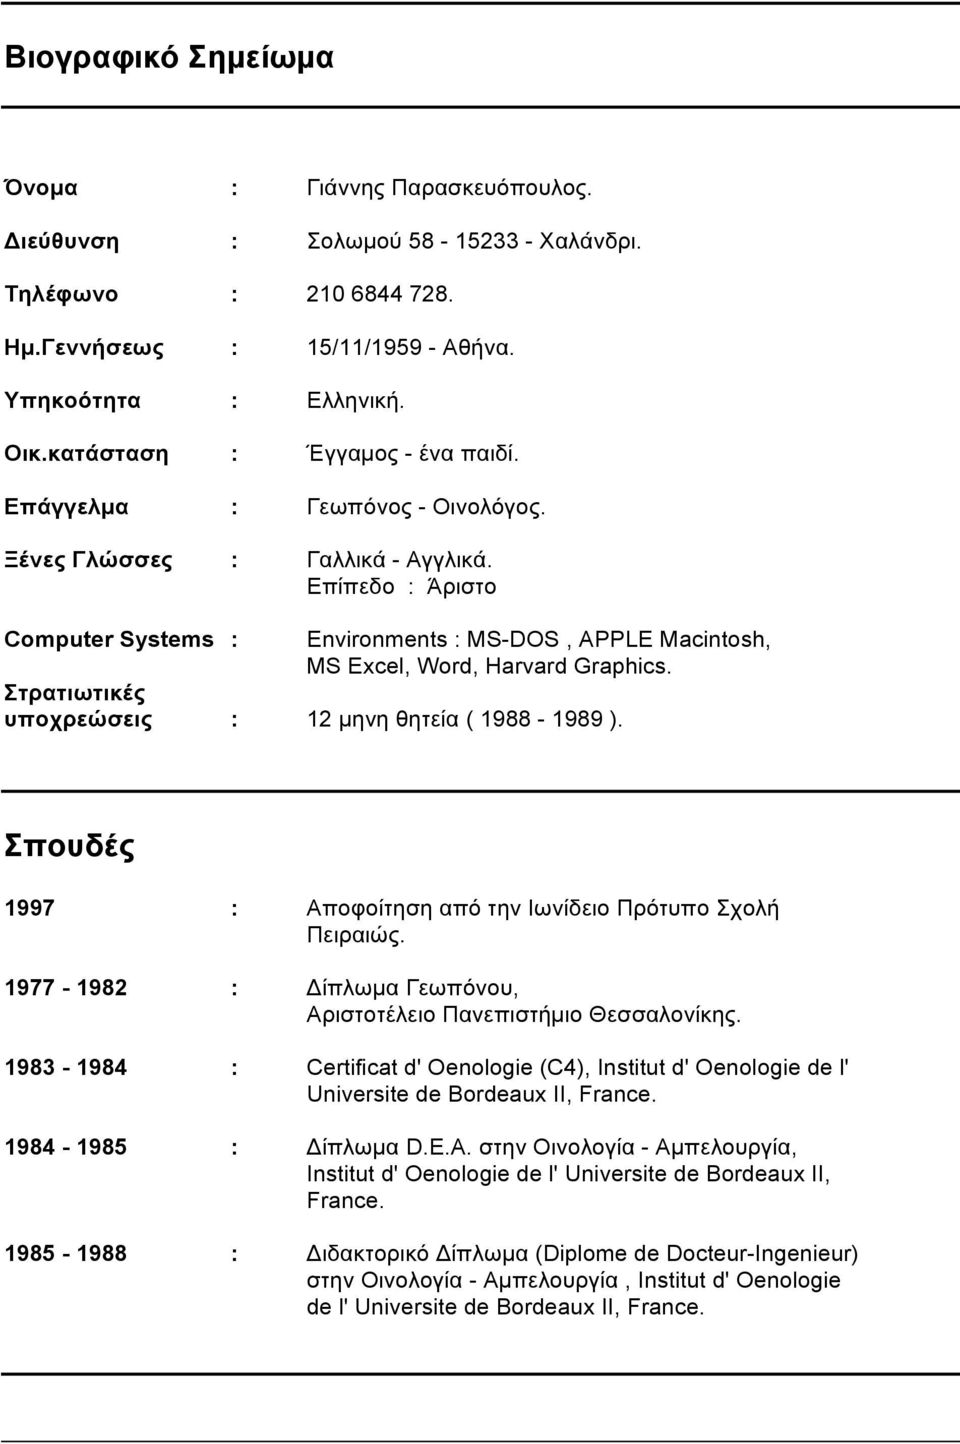 Επίπεδο : Άριστο Computer Systems : Environments : MS-DOS, APPLE Macintosh, MS Excel, Word, Harvard Graphics. Στρατιωτικές υποχρεώσεις : 12 µηνη θητεία ( 1988-1989 ).